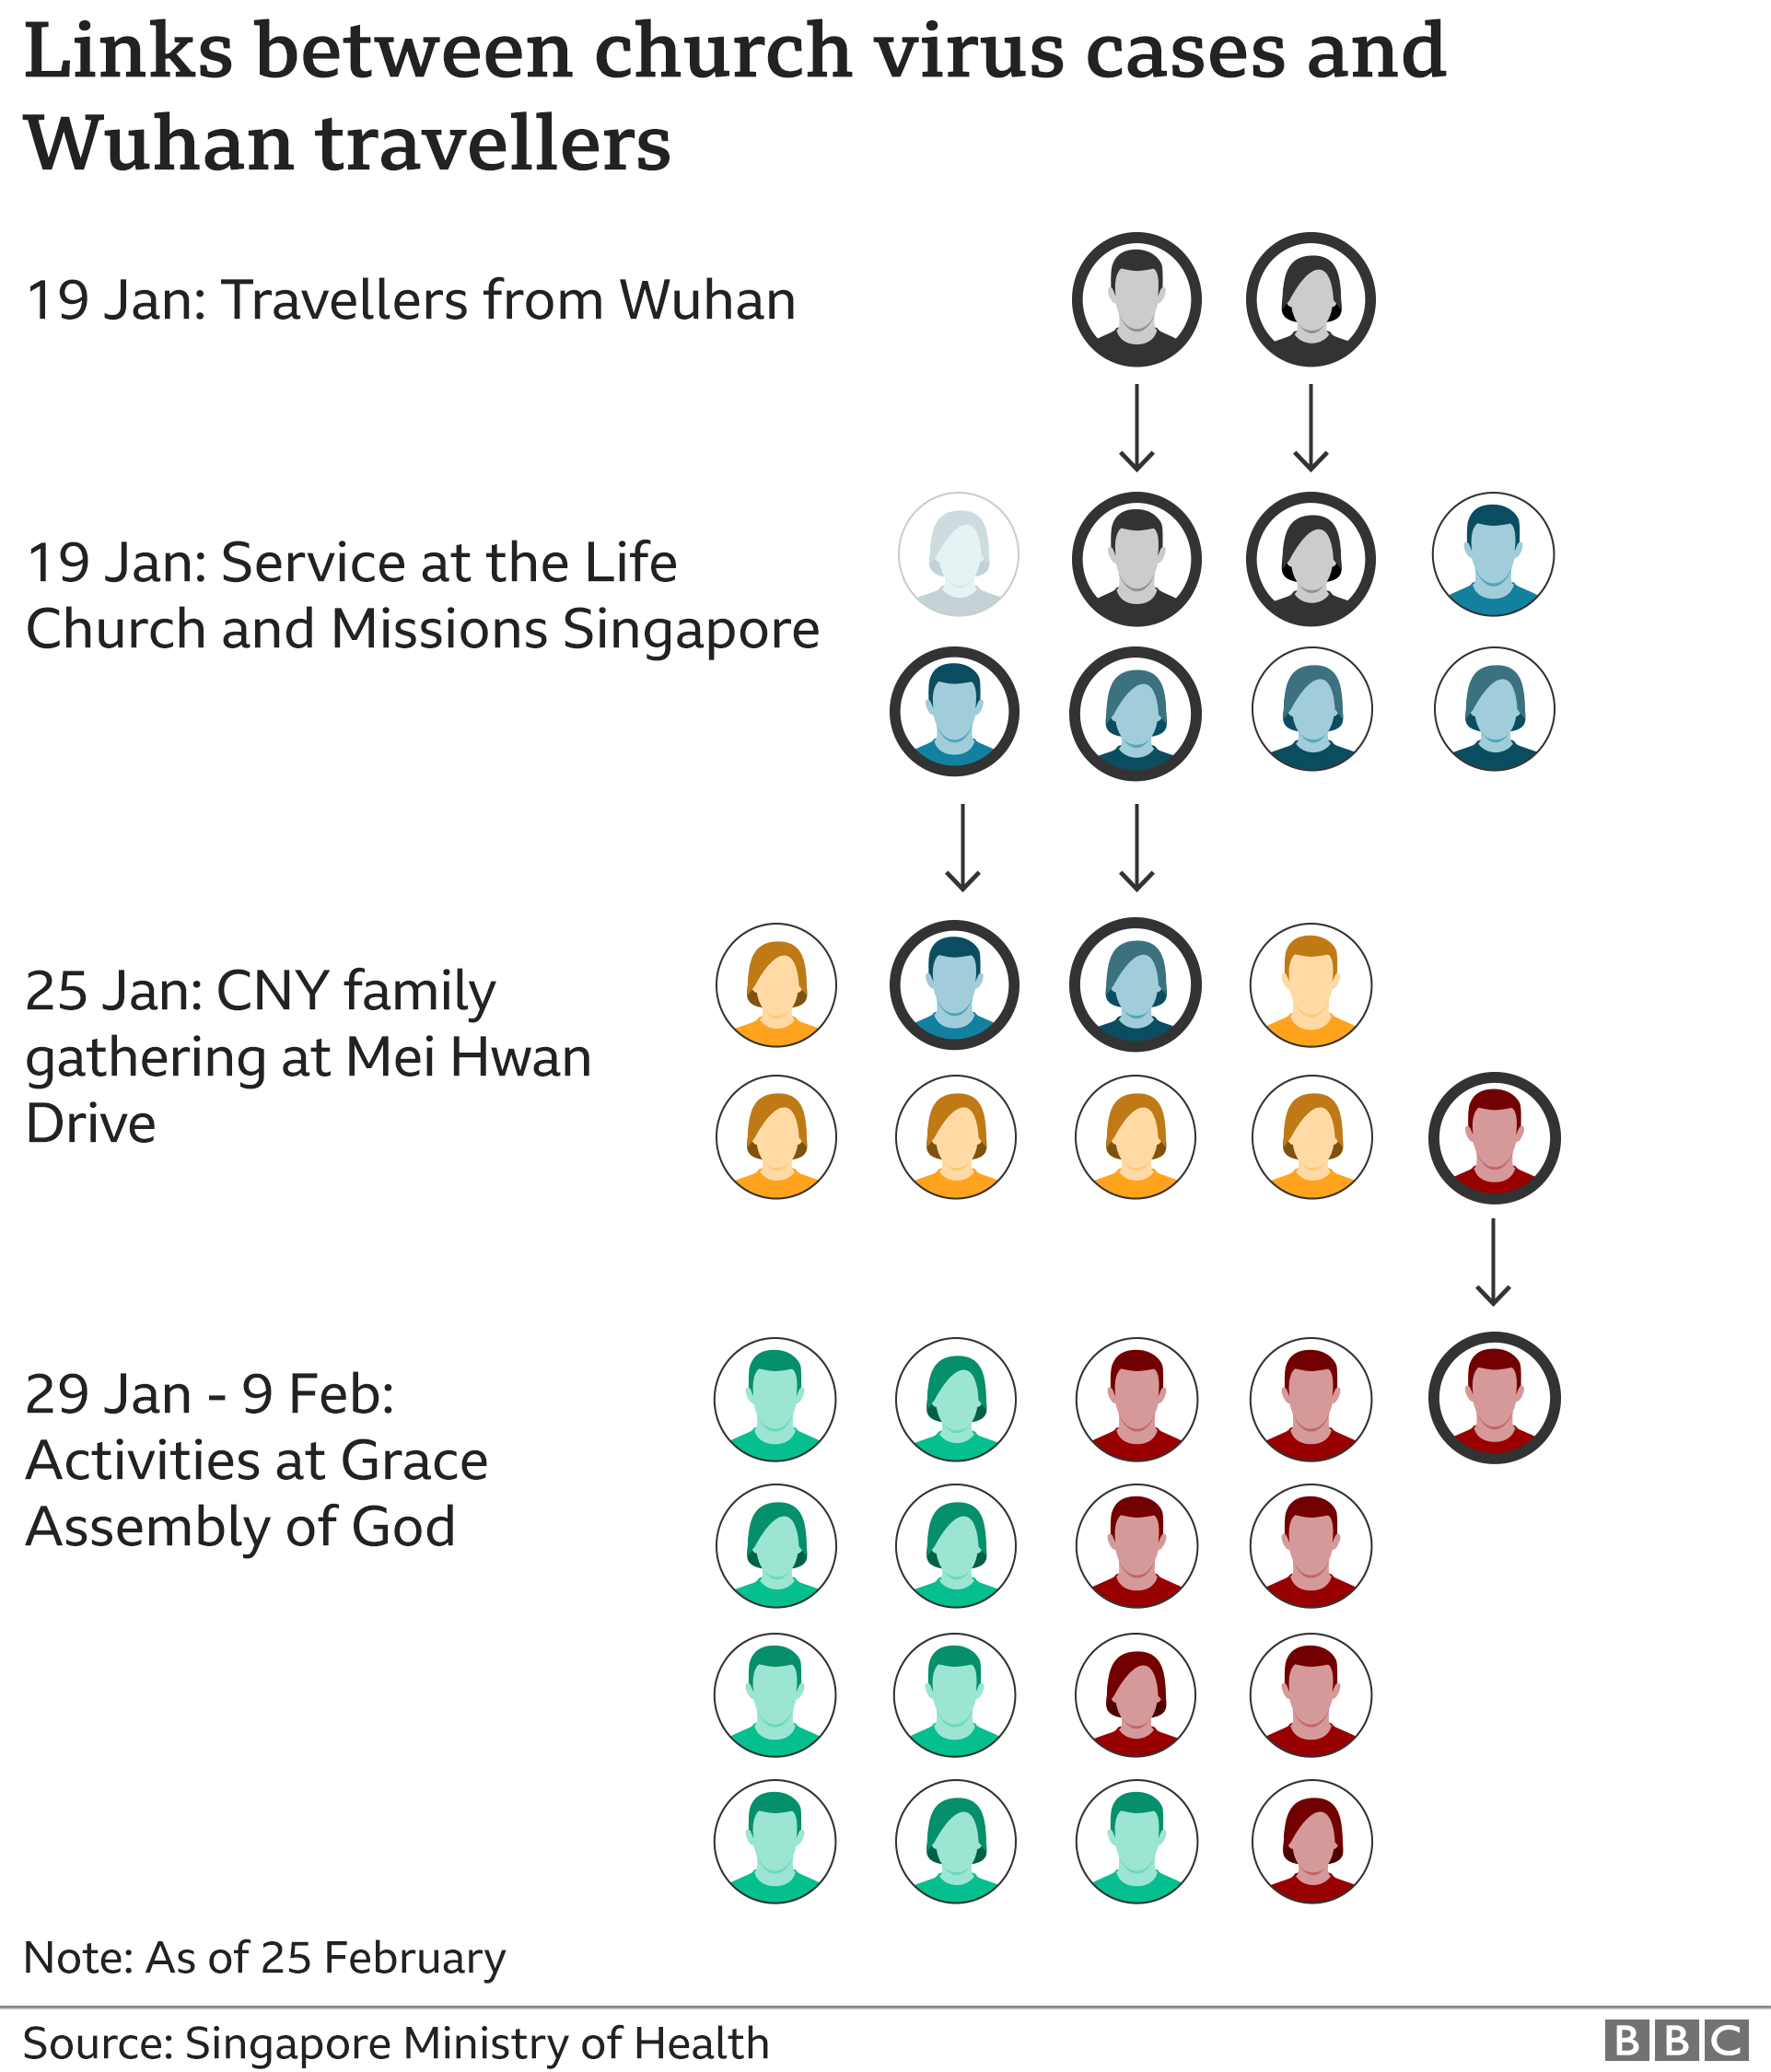 Графика, показывающая связь между случаями церковного вируса и путешественниками из Ухани